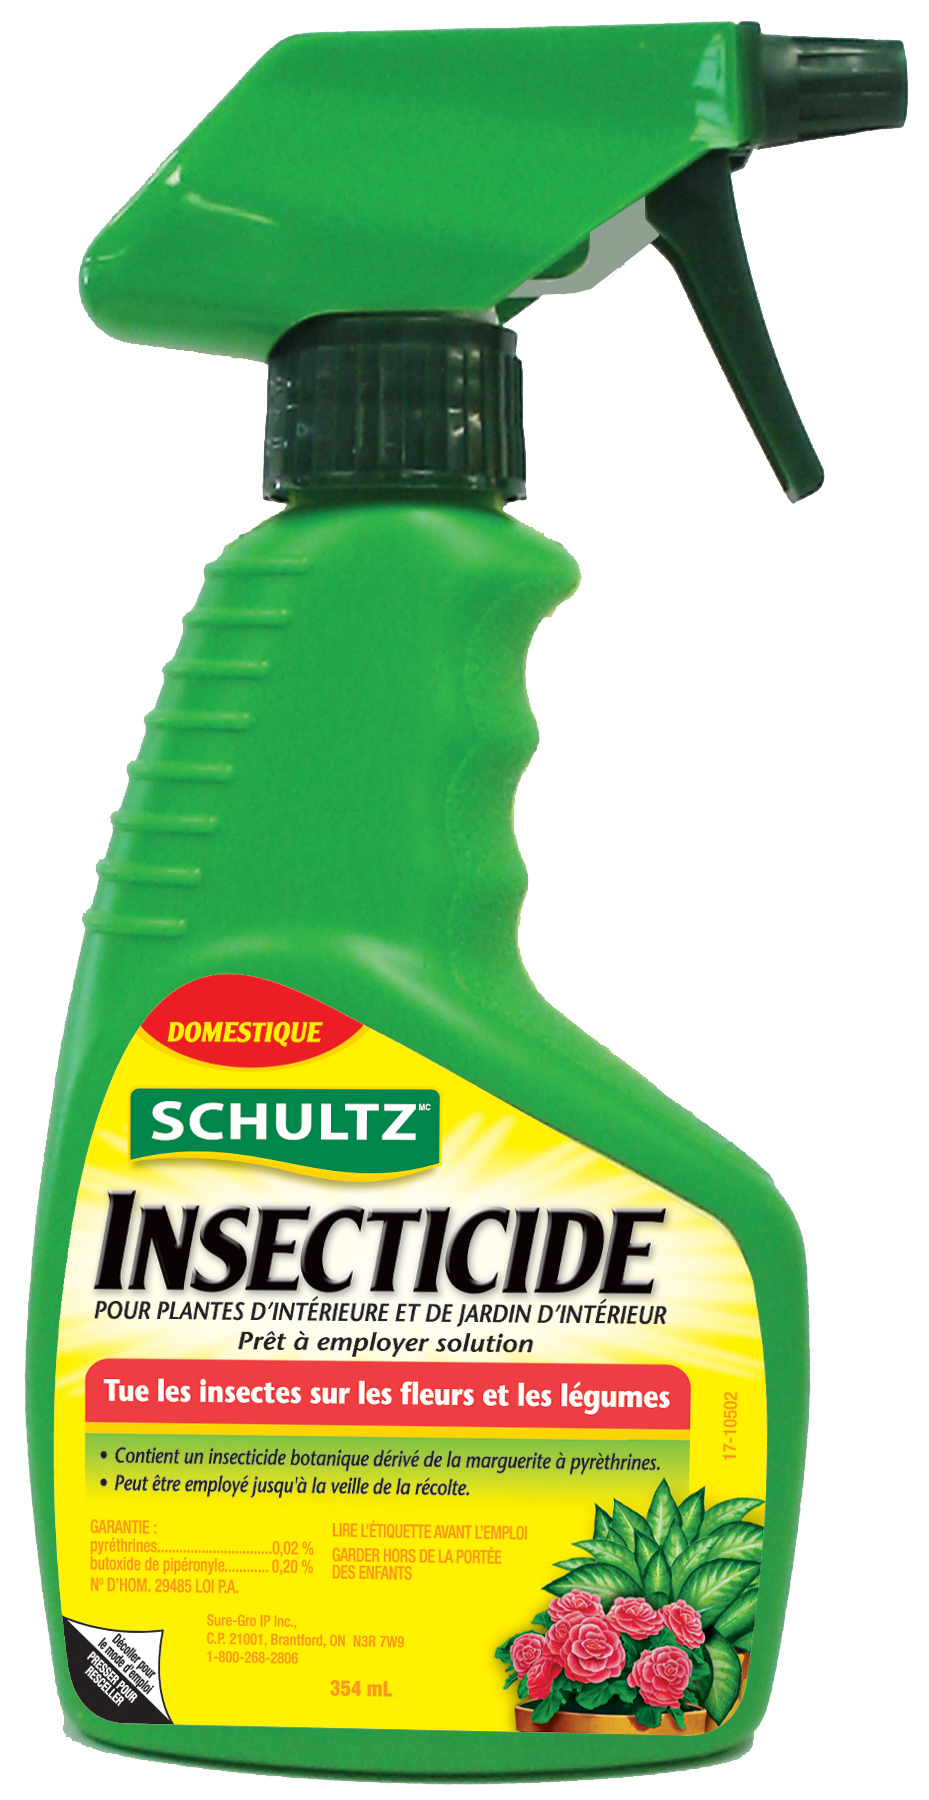 Insecticide pour plantes d'intérieure et de jardin d'intérieur